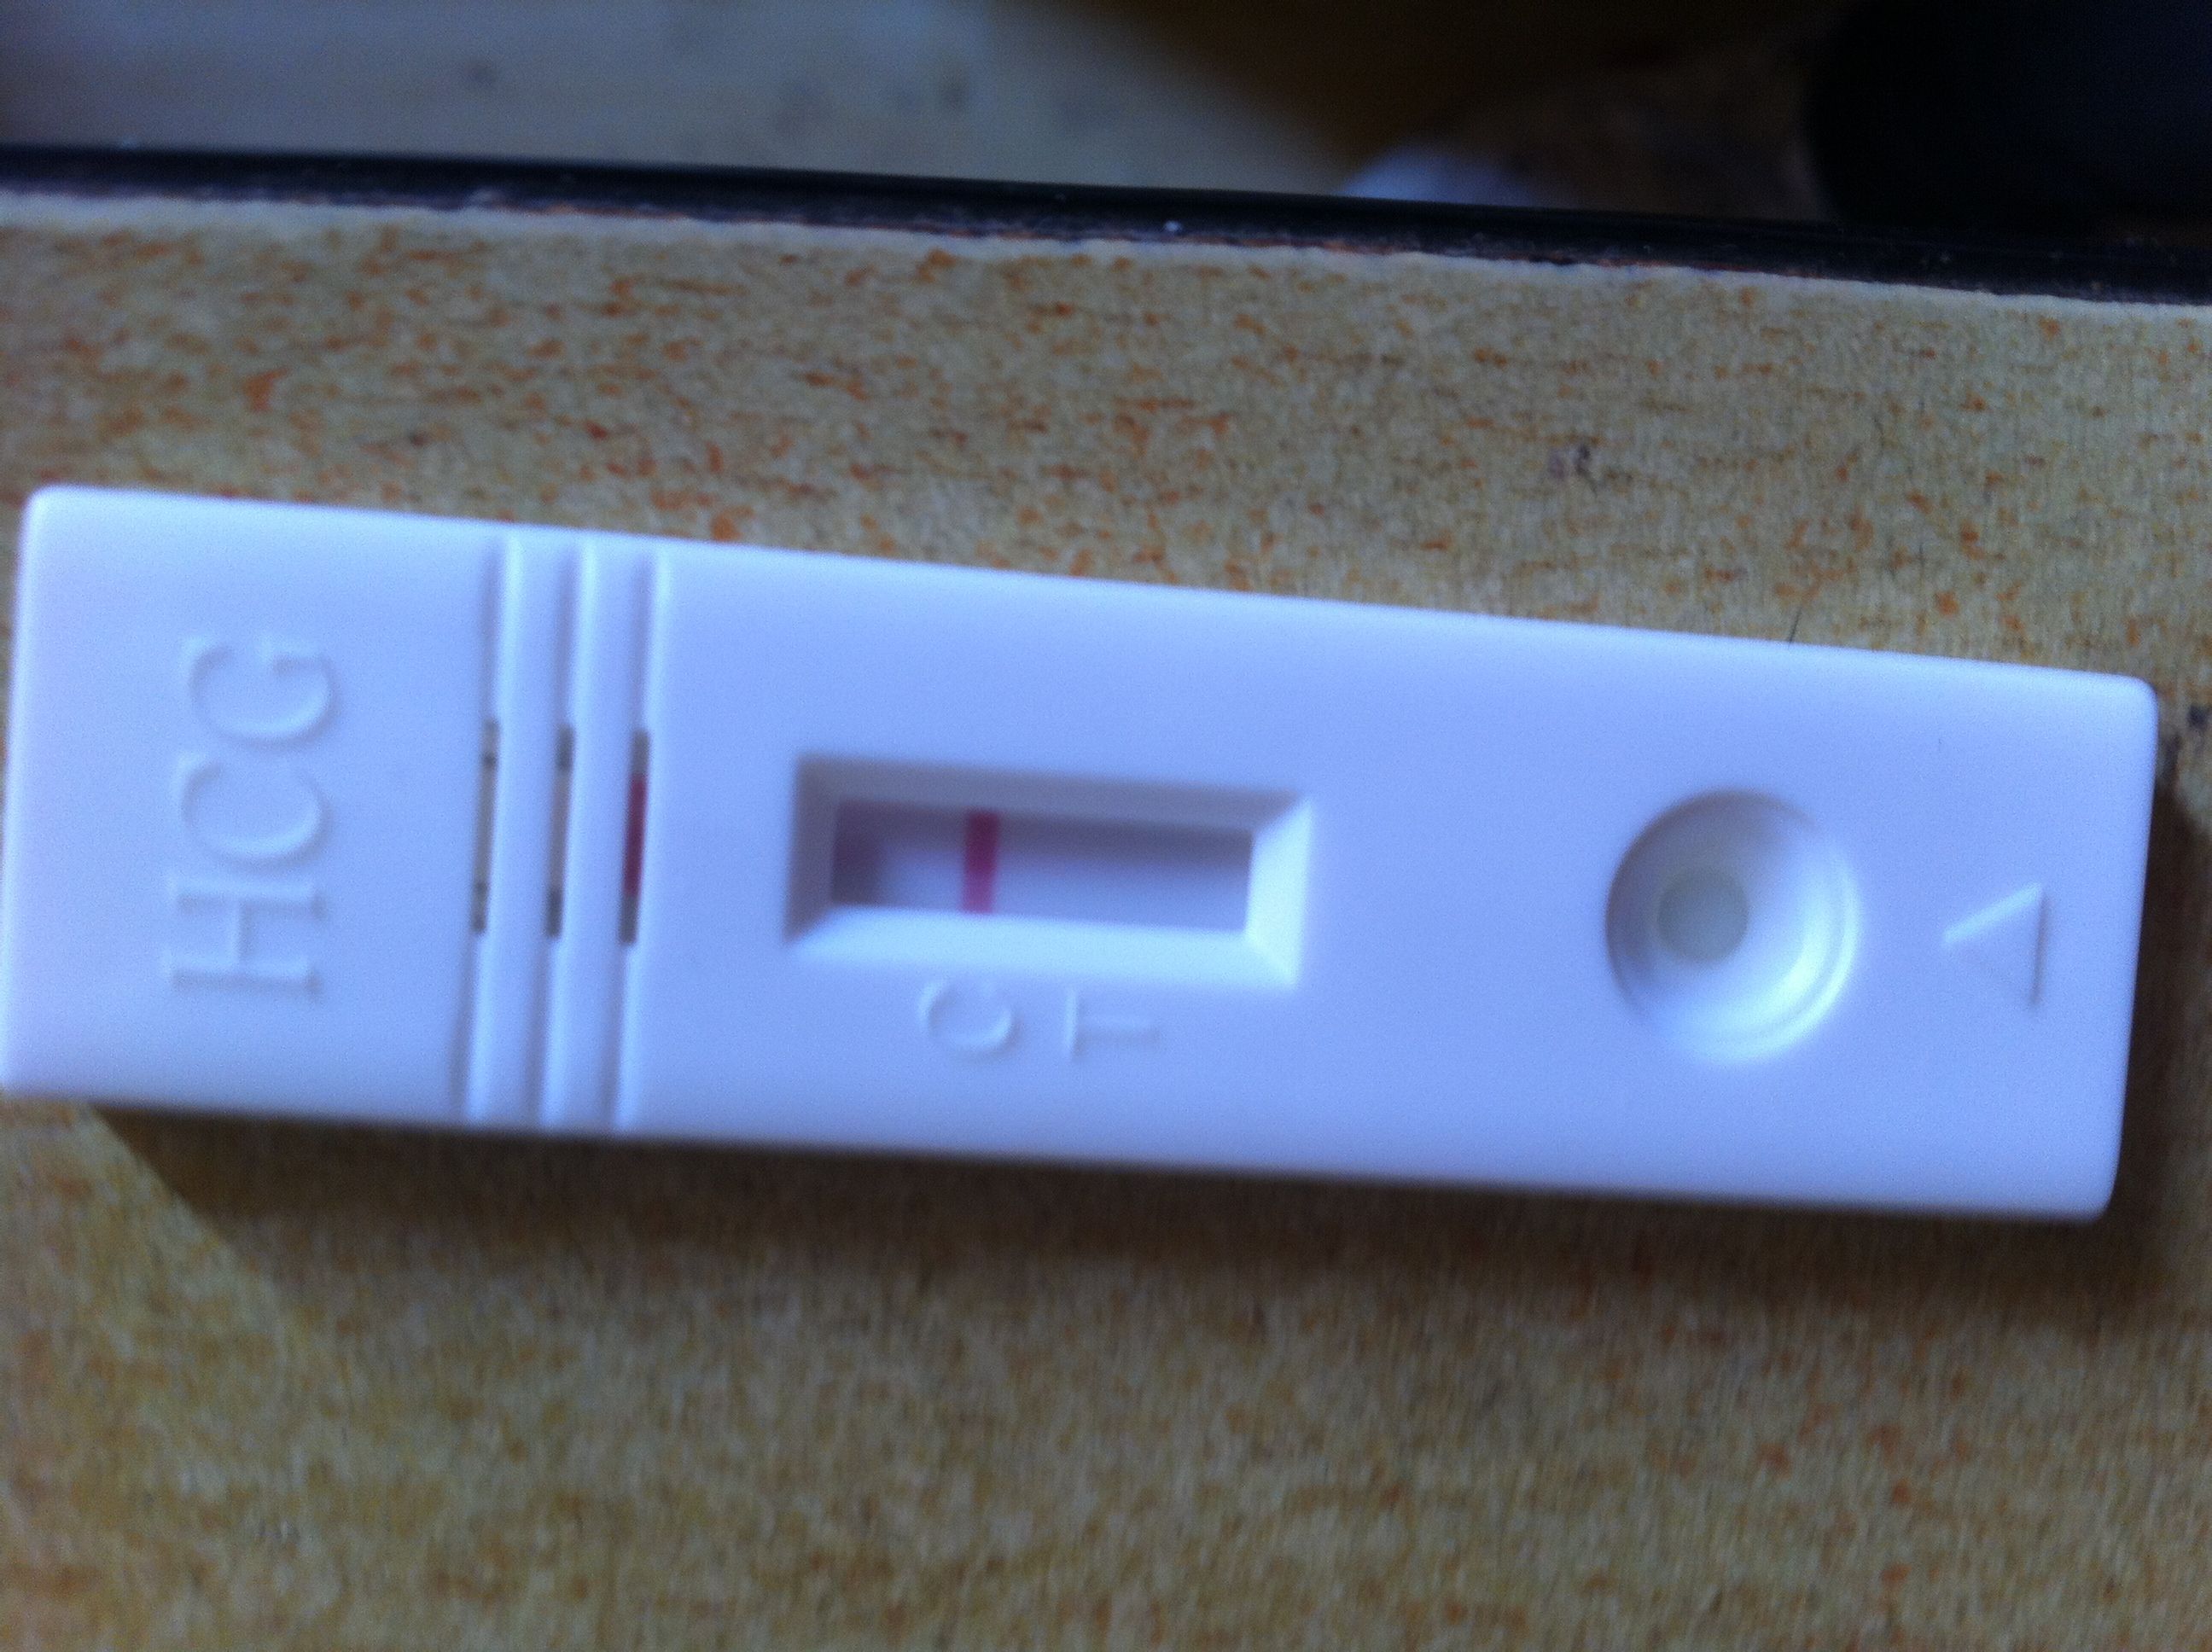 2013-03-08 18:18 病情分析:验孕试纸,两张显示均阴性,可以排除怀孕